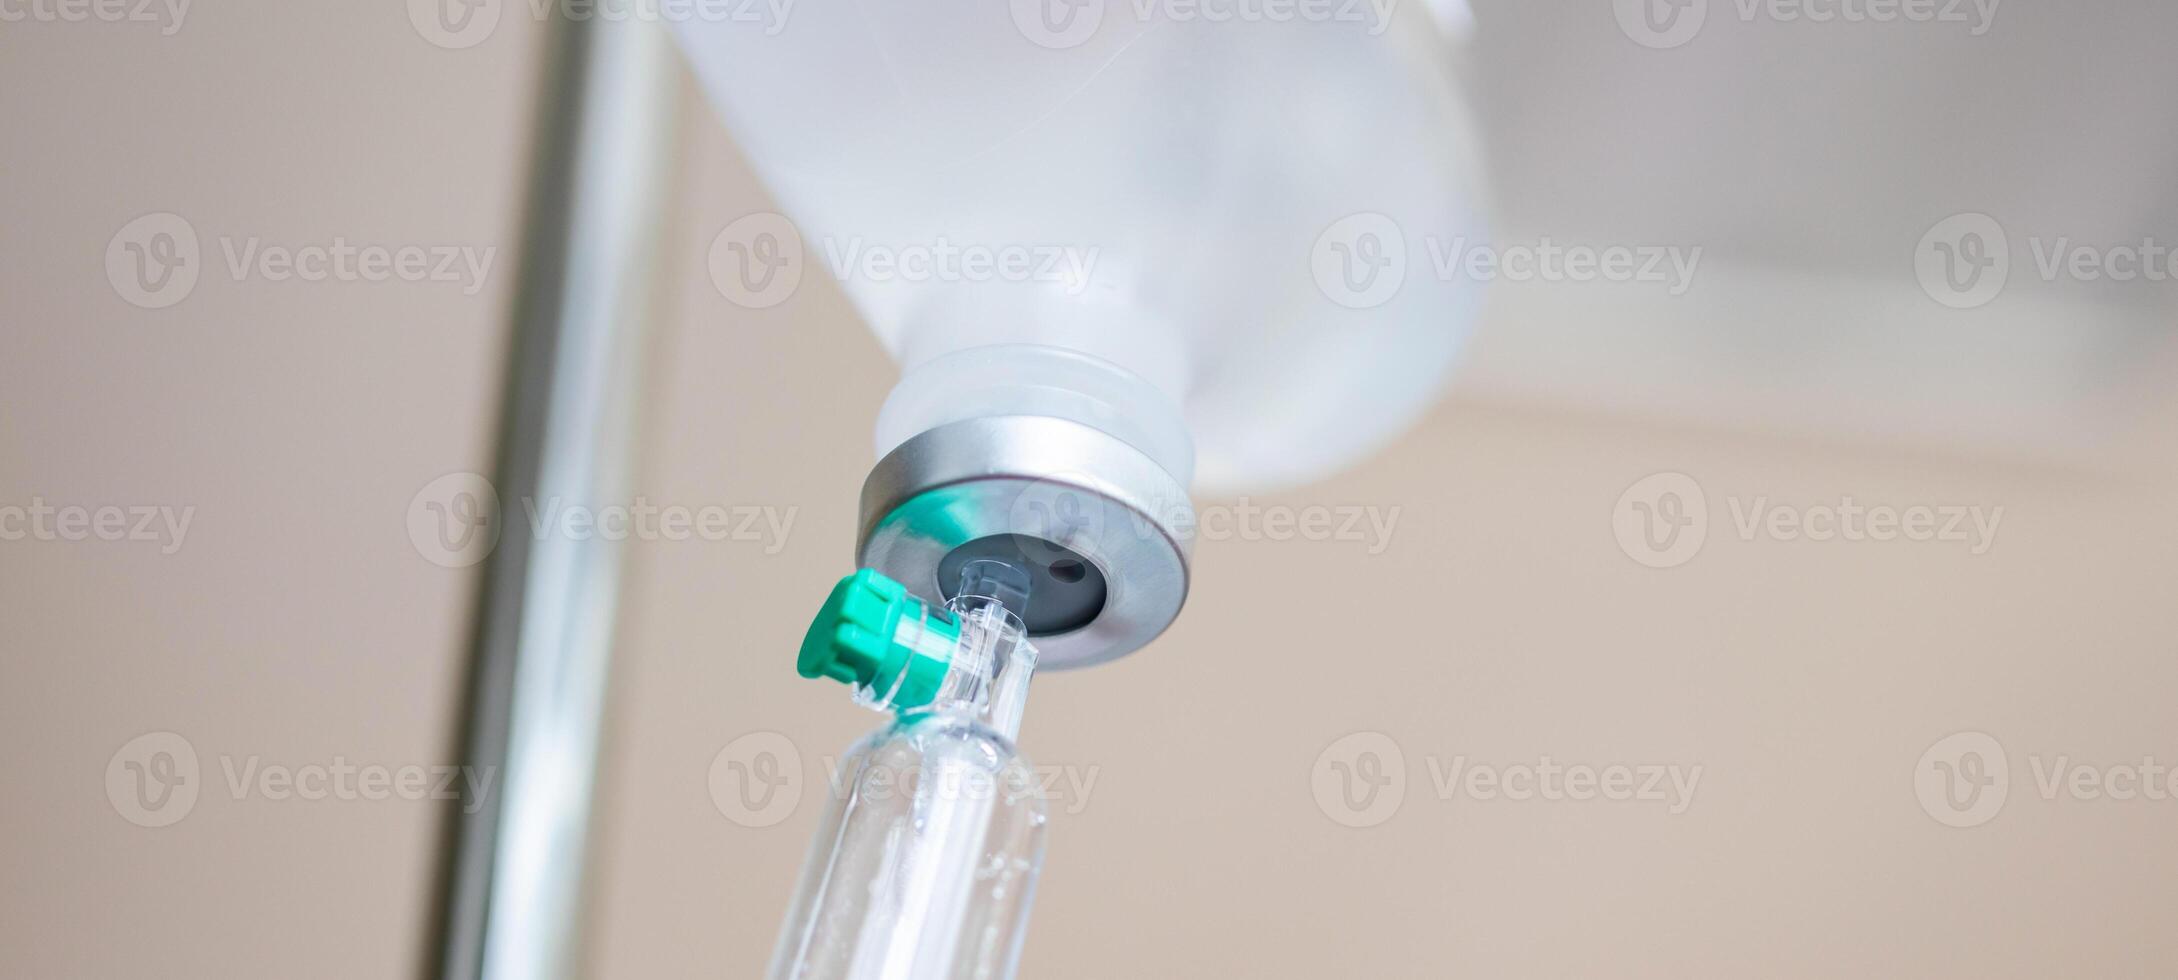 proche en haut médical intraveineux iv goutte dans hôpital Contexte photo